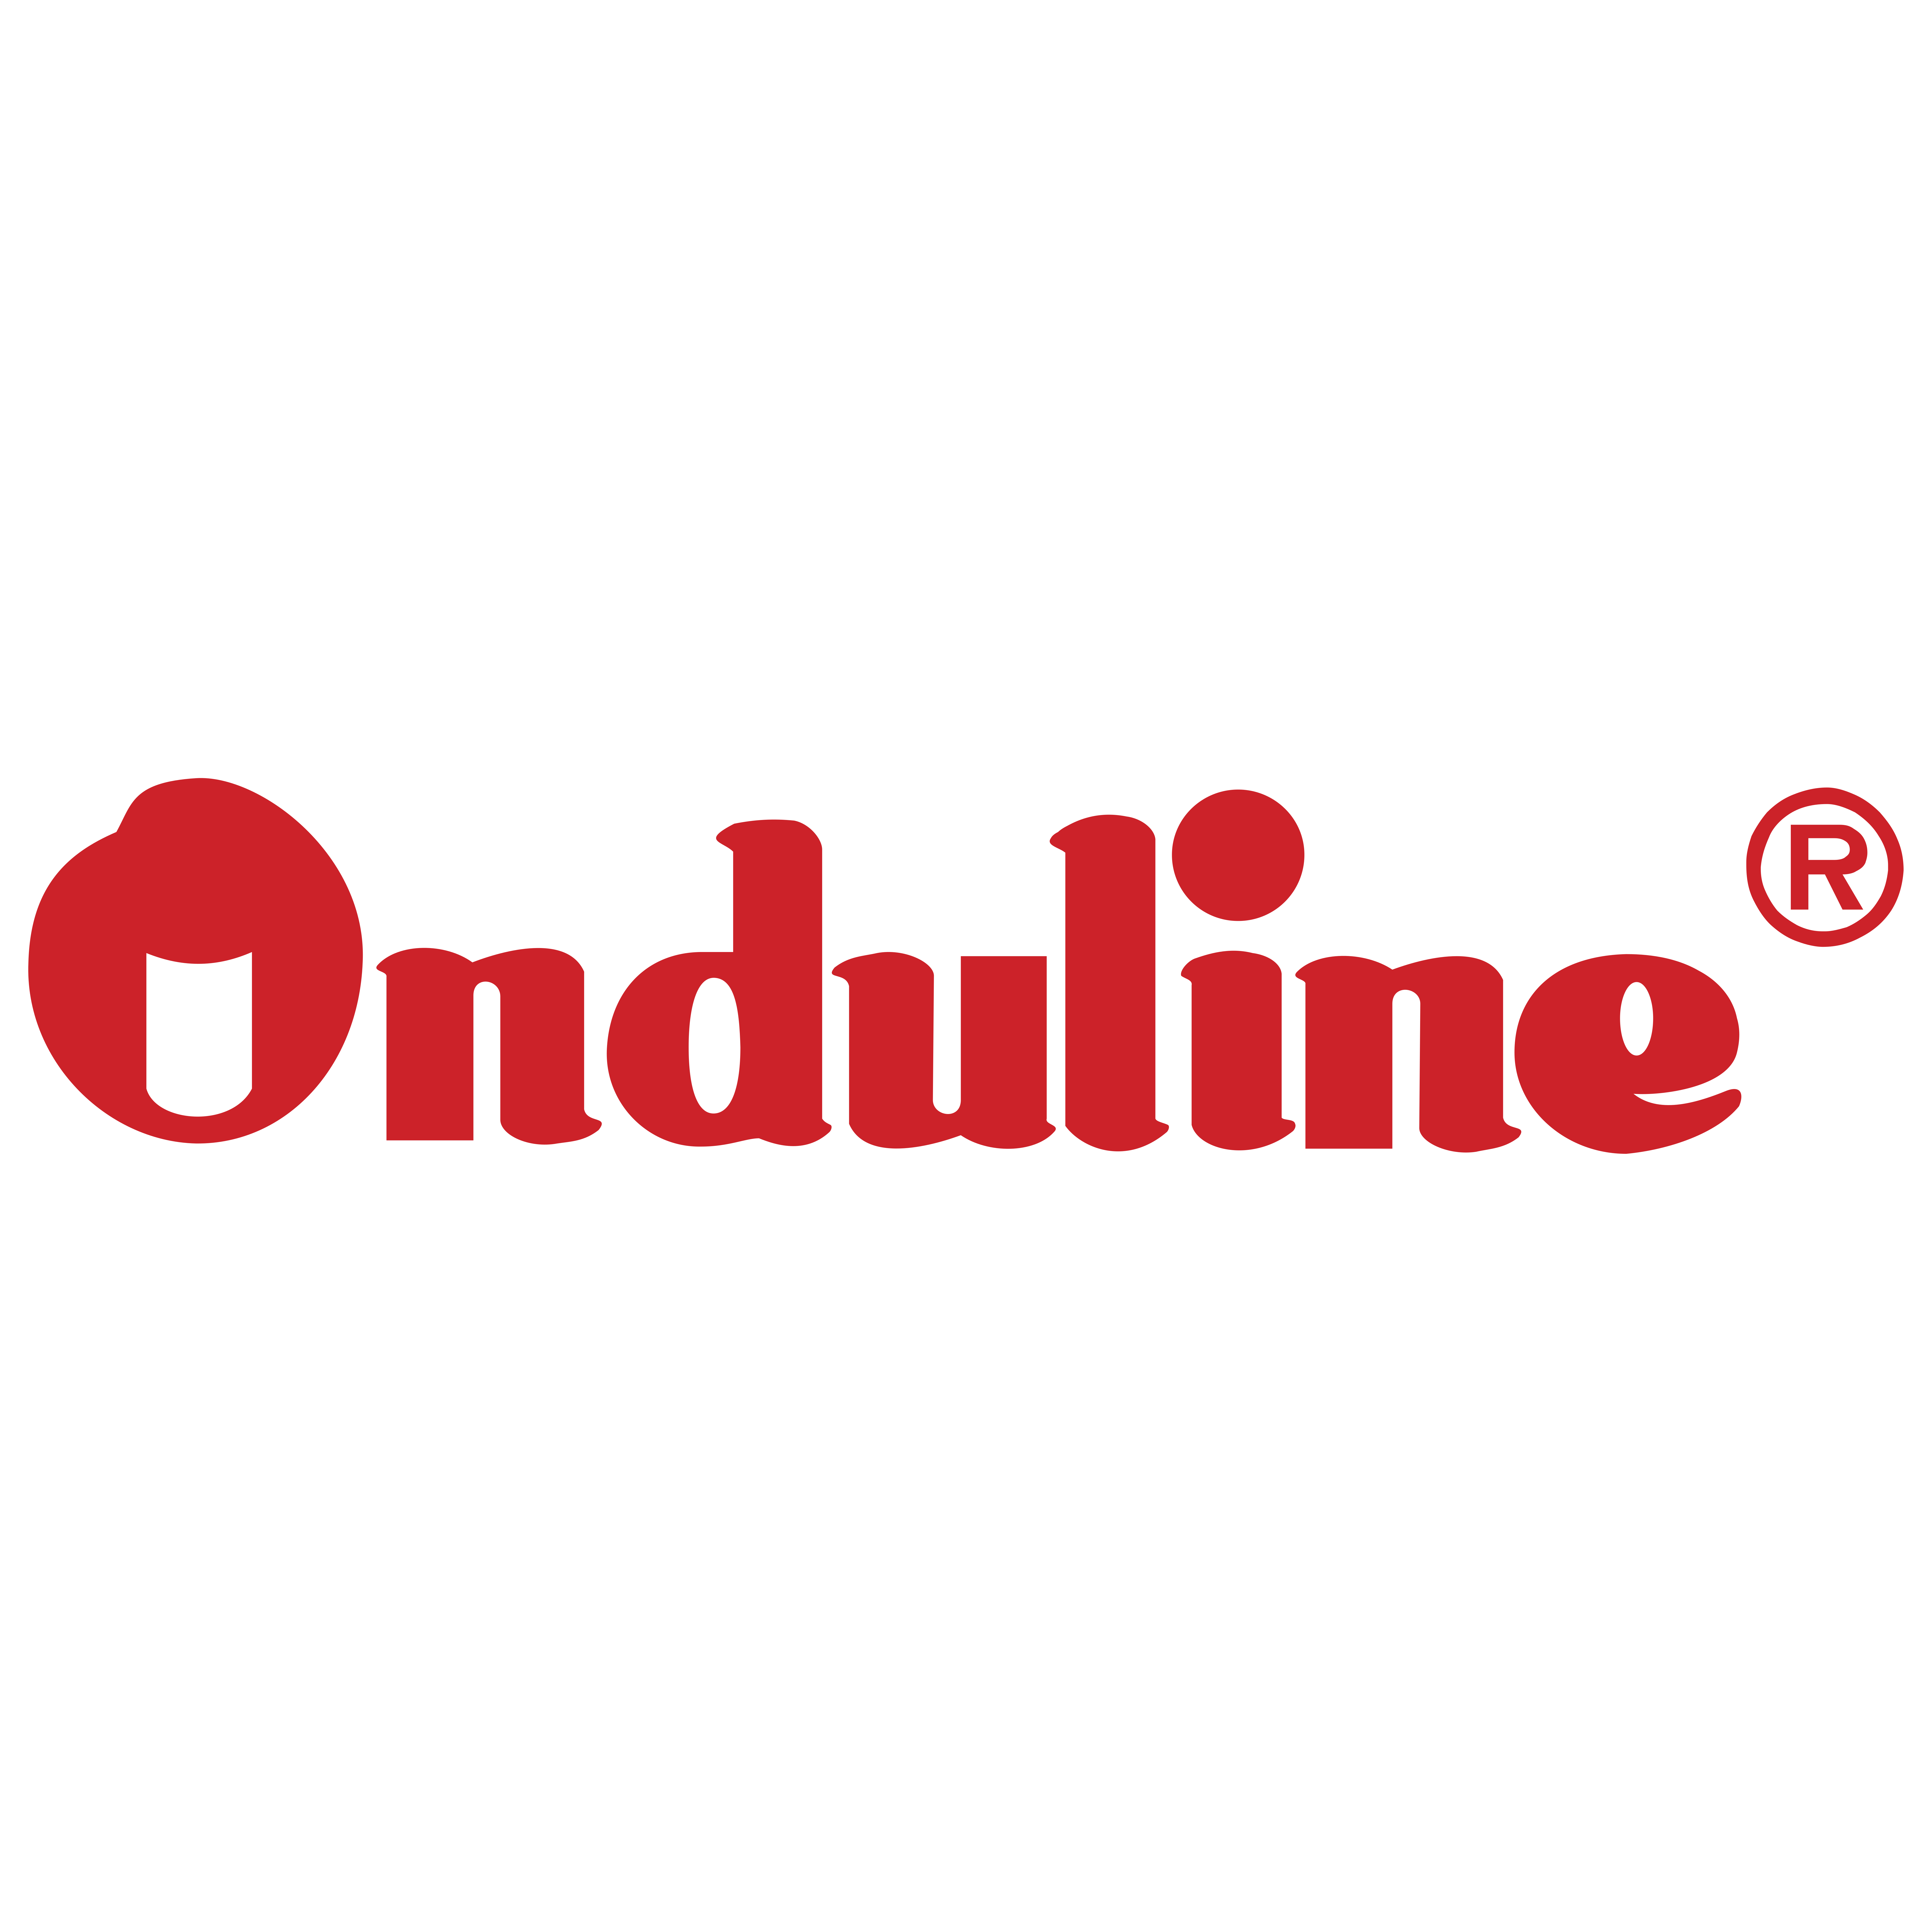 Компания ООО «Ондулин» информирует Вас о повышении цен на выпускаемую продукцию и аксессуары Onduline.

&nbsp;

&nbsp;